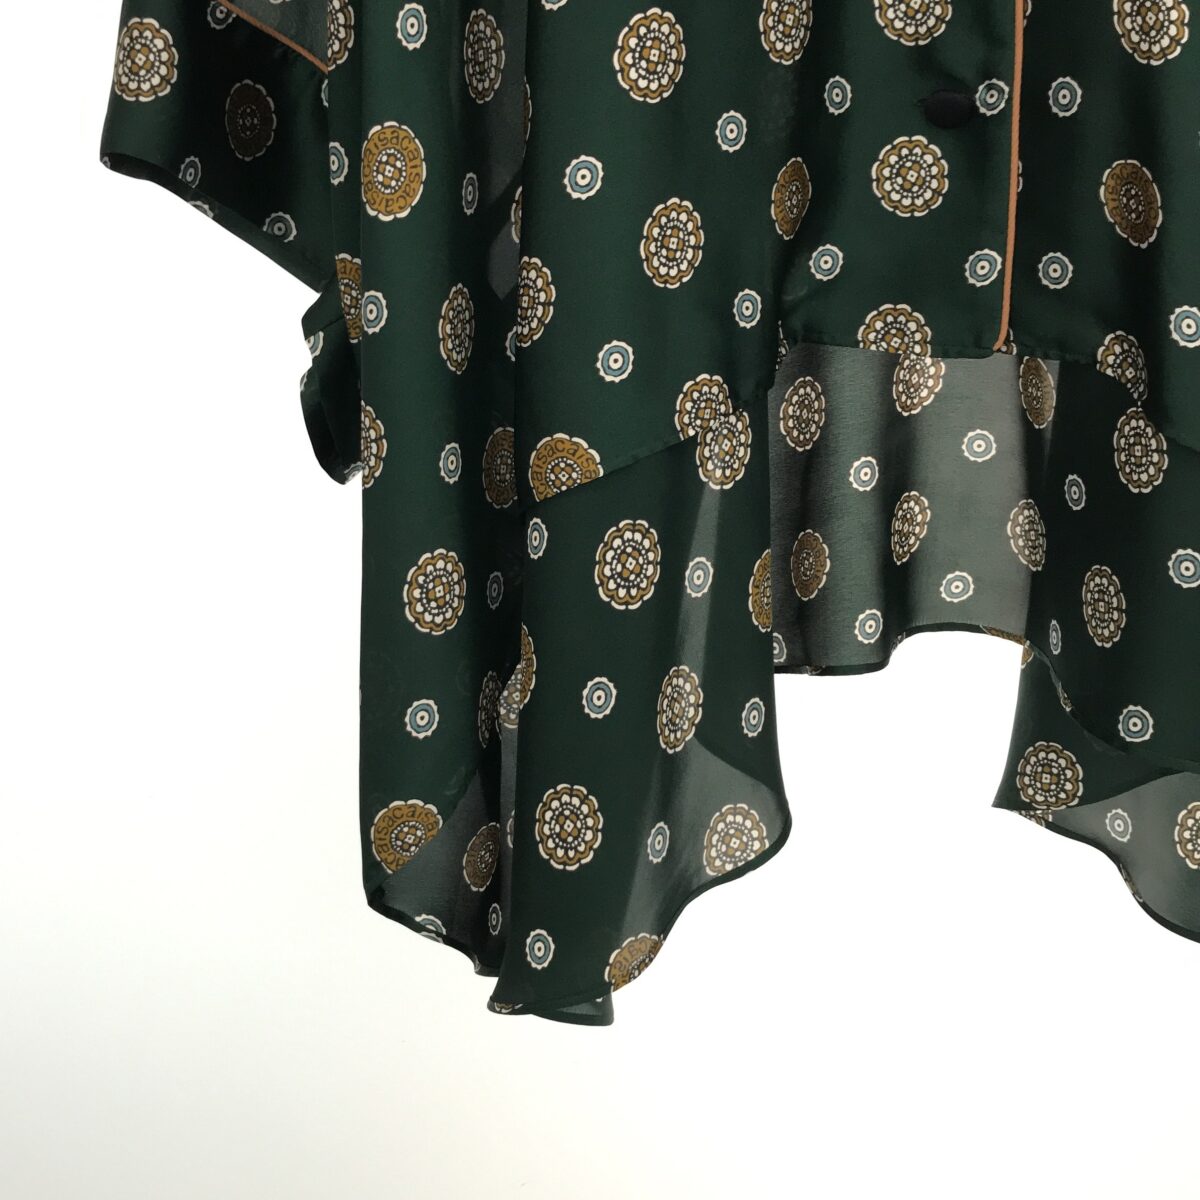 【美品】  sacai / サカイ | 2021SS | Komon Print Shirt 小紋 プリント バック レース 切替 オープンカラー オーバーサイズ ブラウス | 1 | グリーン | レディース